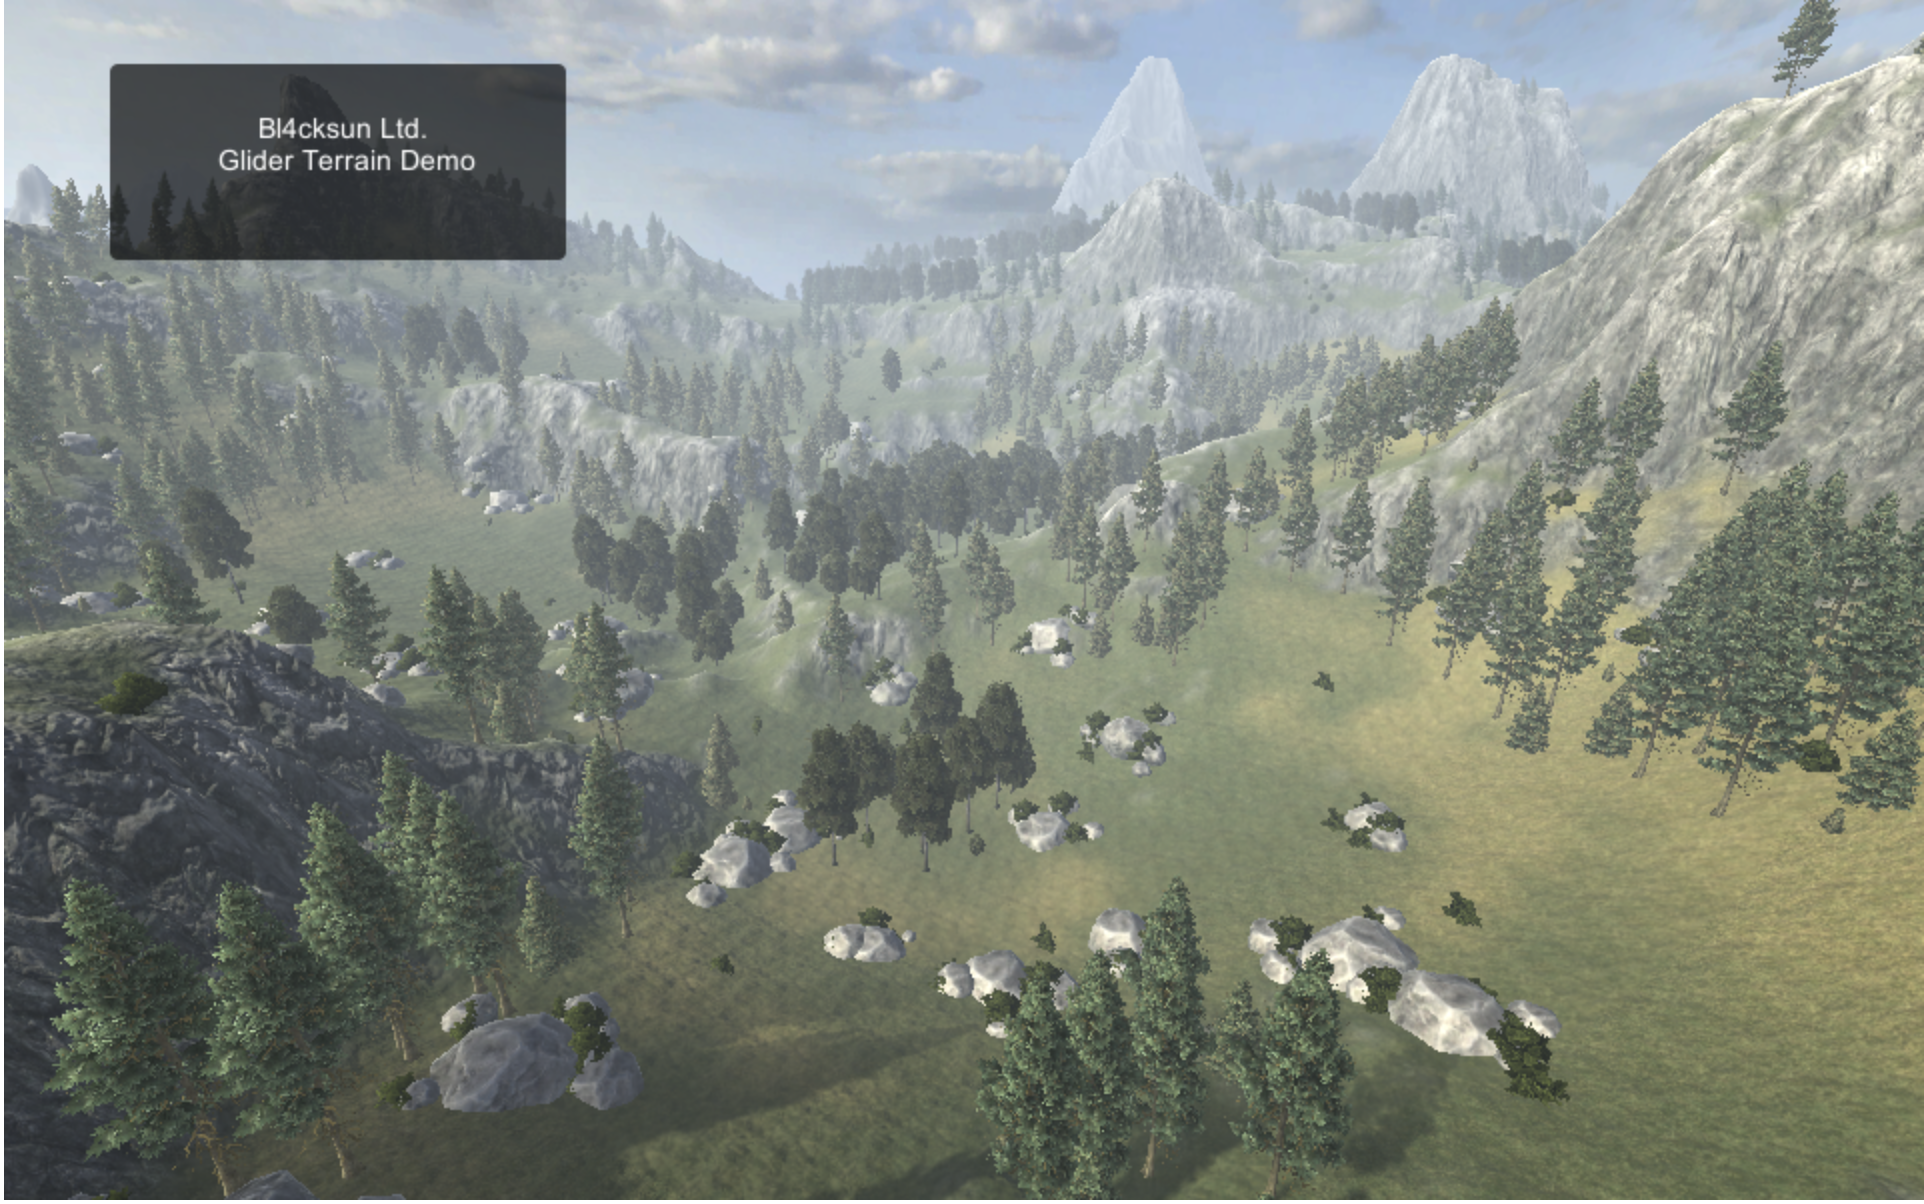 Terrain Demo screen capture